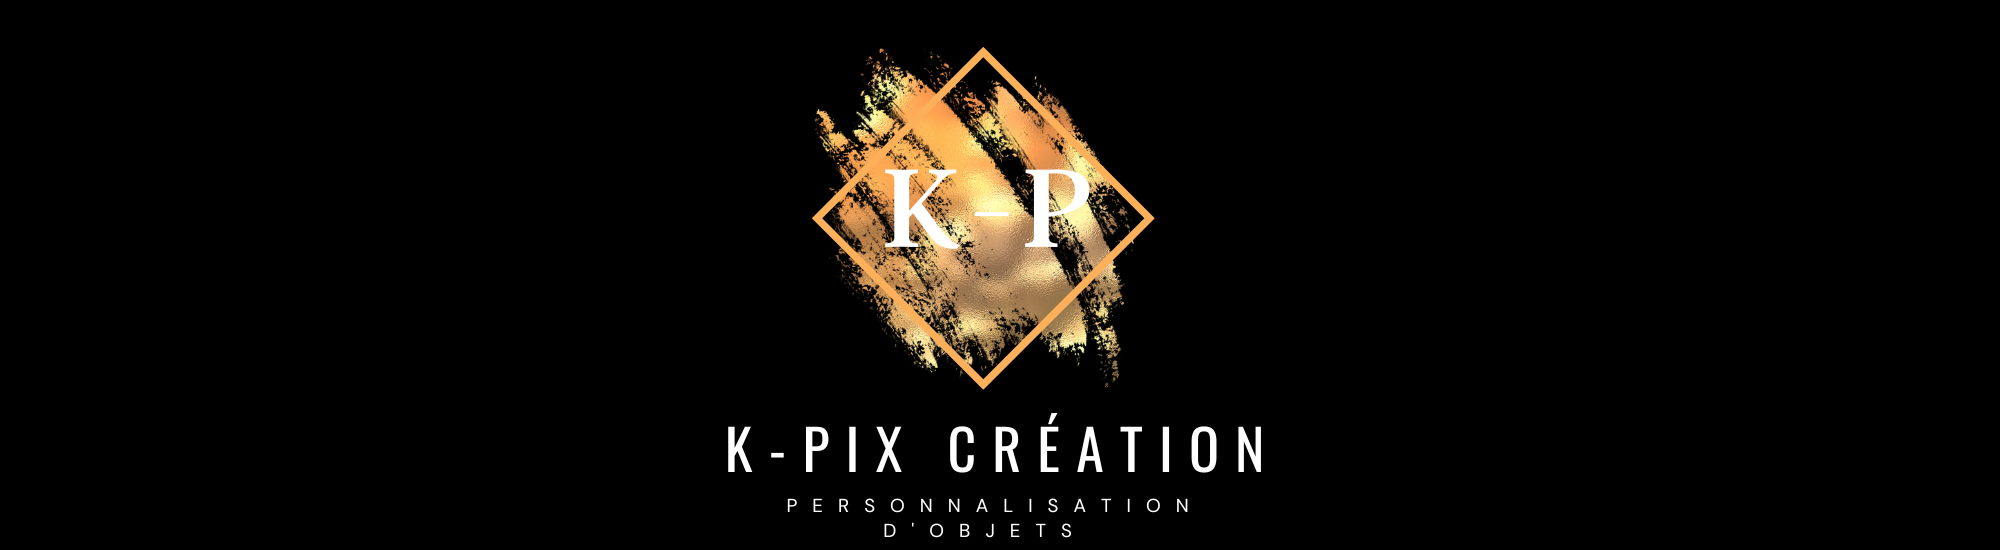 K-pix création